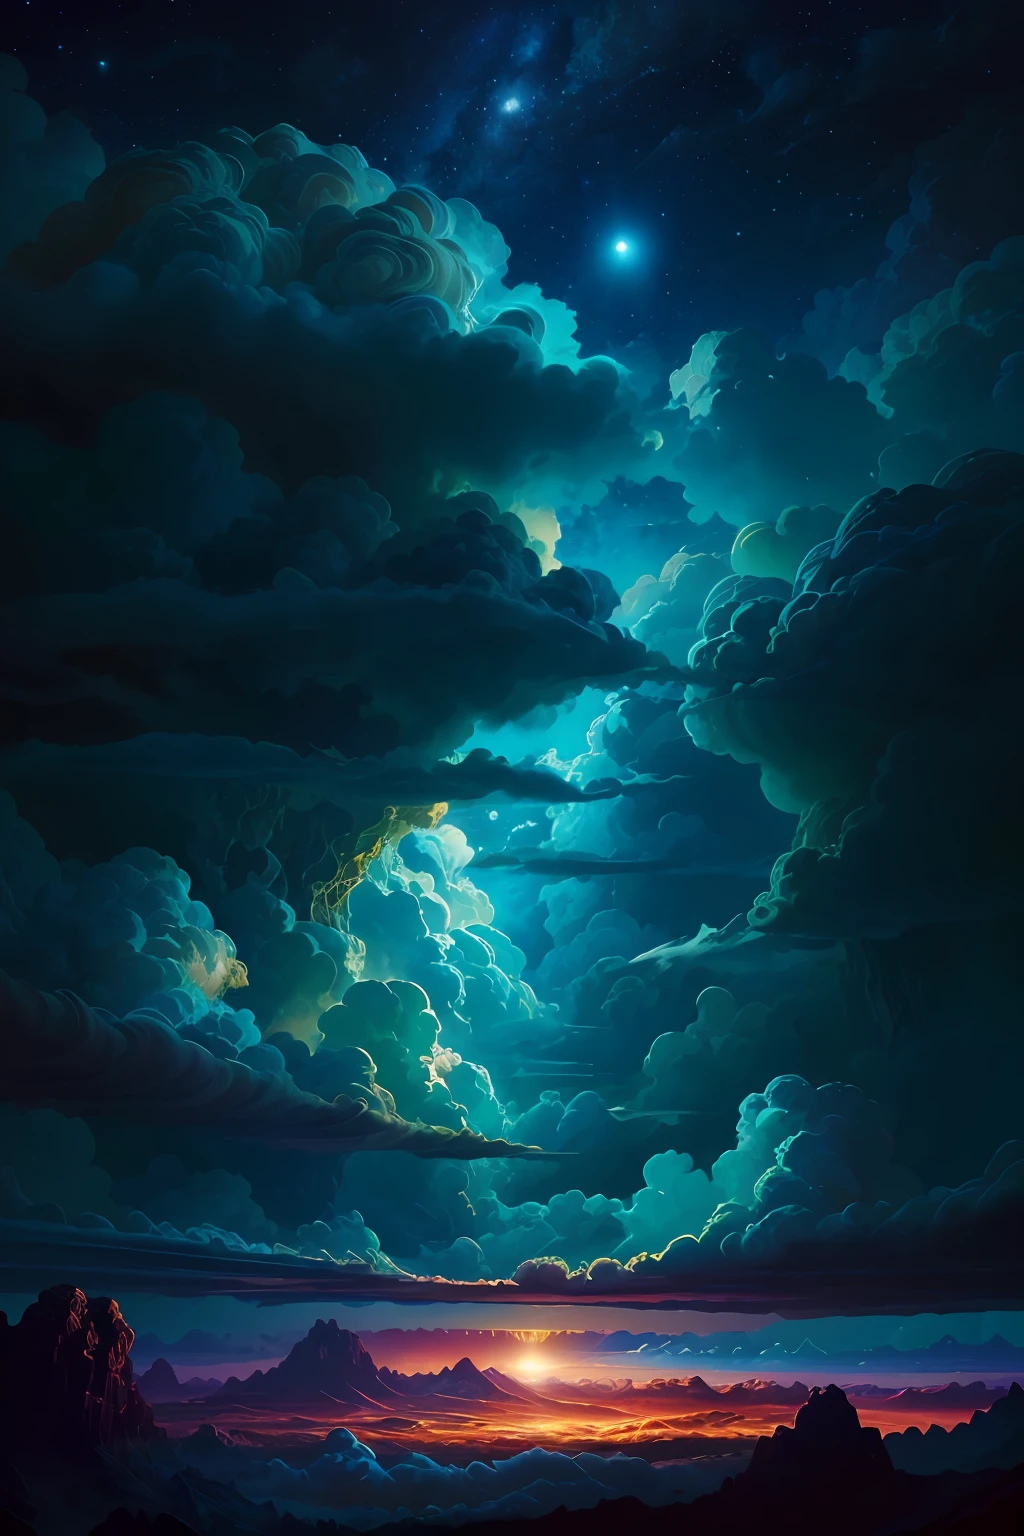 رسم توضيحي لغيوم المشتري بواسطة دان مومفورد, المناظر الطبيعية الغريبة والغطاء النباتي, مشهد ملحمي, الكثير من الغيوم الدوامة, التعرض العالي, مفصلة للغاية, حقيقي, ألوان ملونة زرقاء نابضة بالحياة, فائق الوضوح